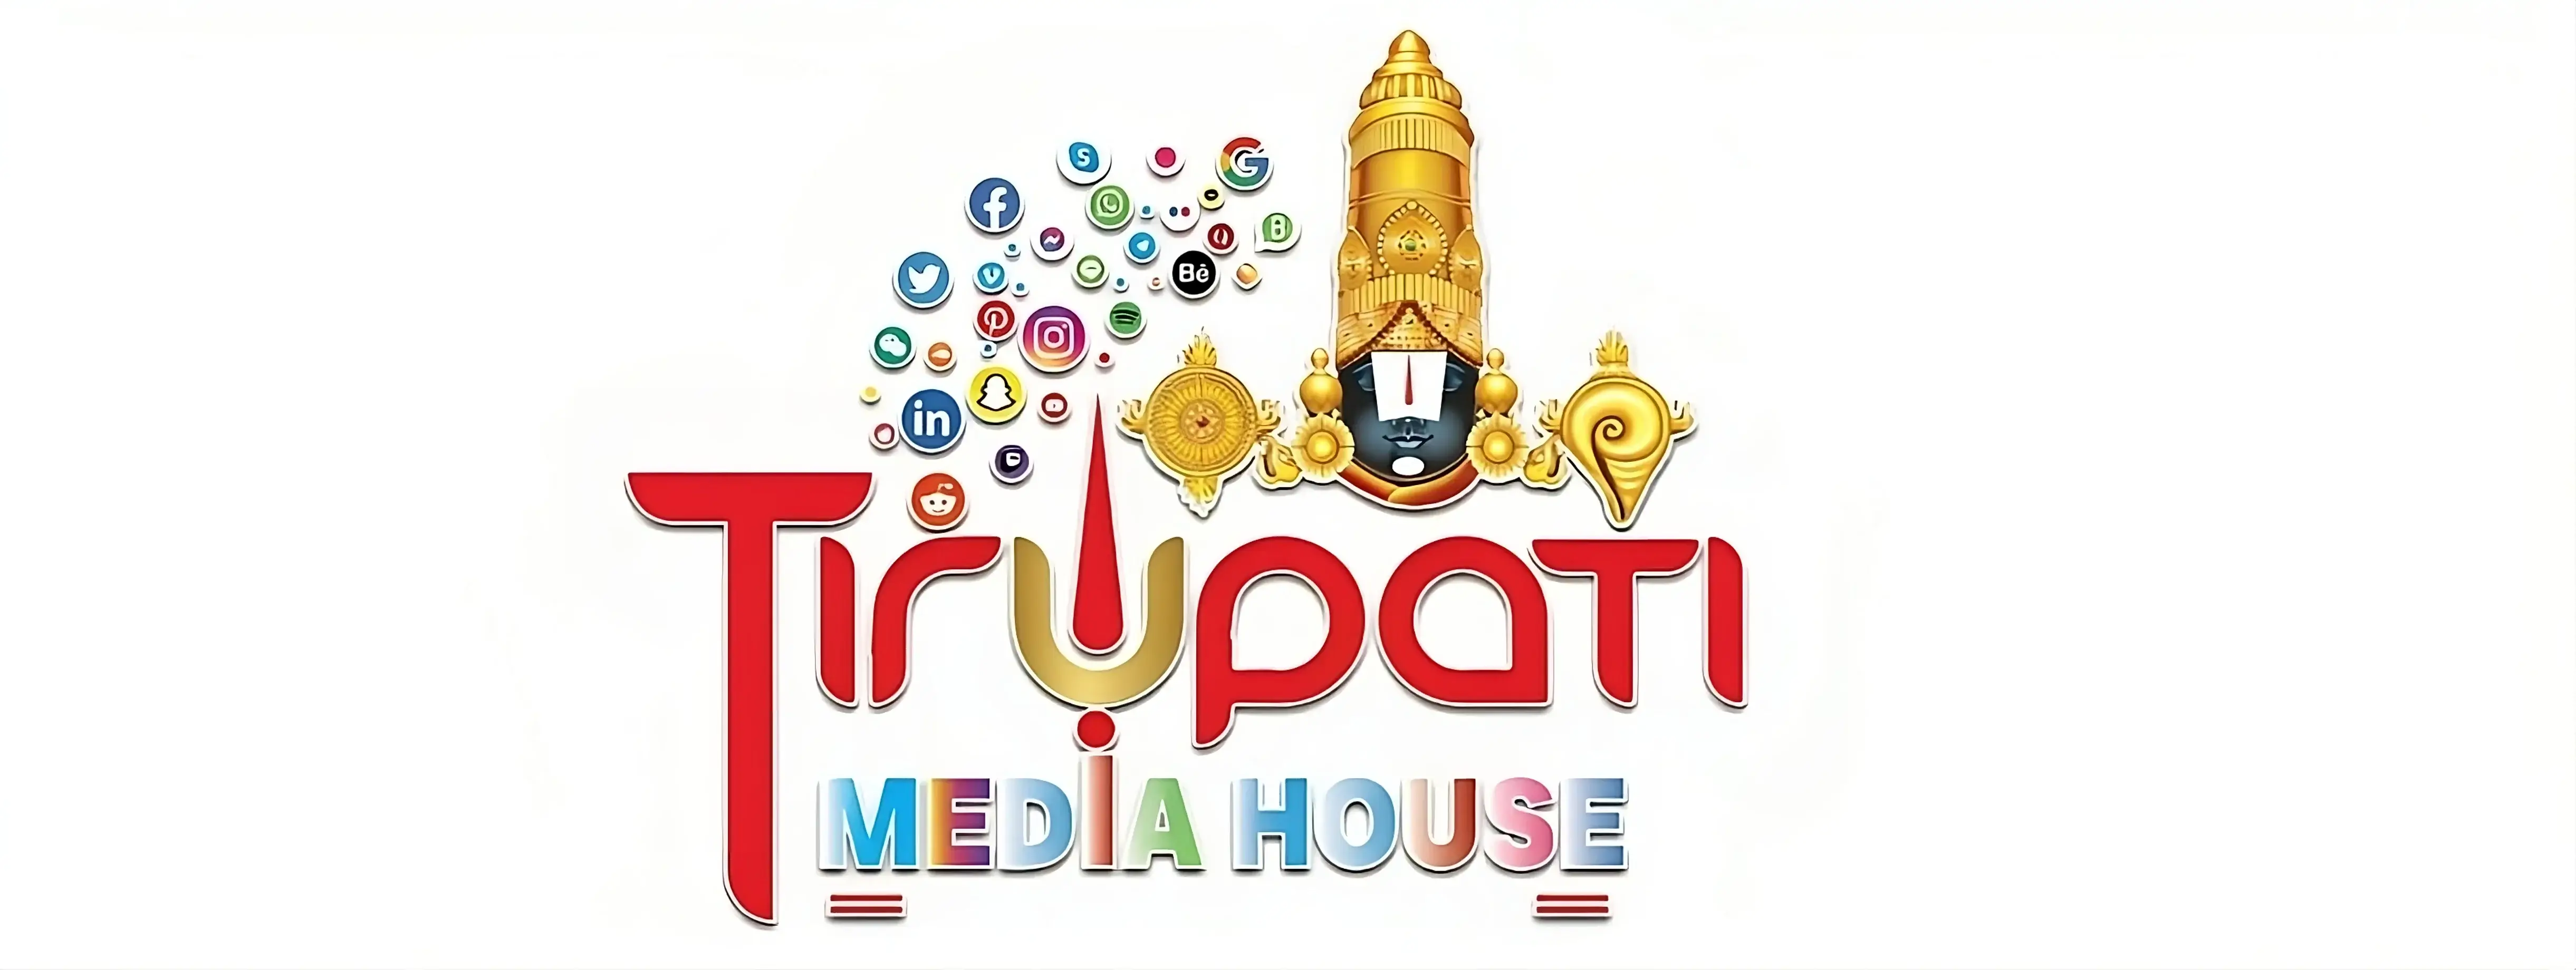 Recognizable logo of Tirupati Media House.